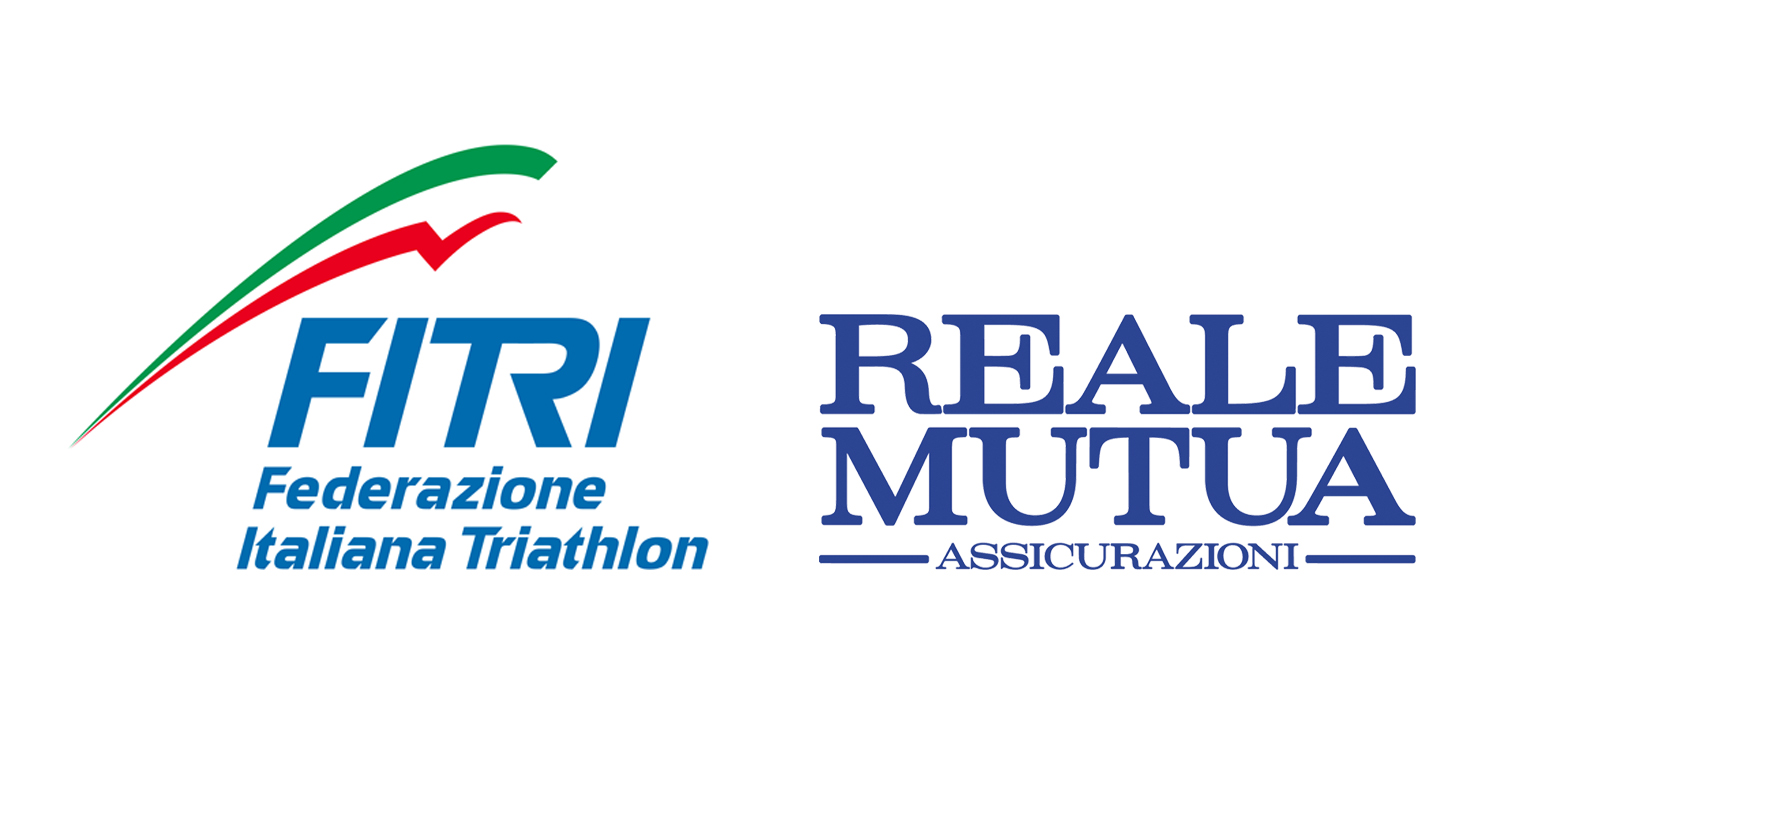 images/2014/foto_news/Logo_FITRI_e_Reale_Mutua_Assicurazioni.jpg